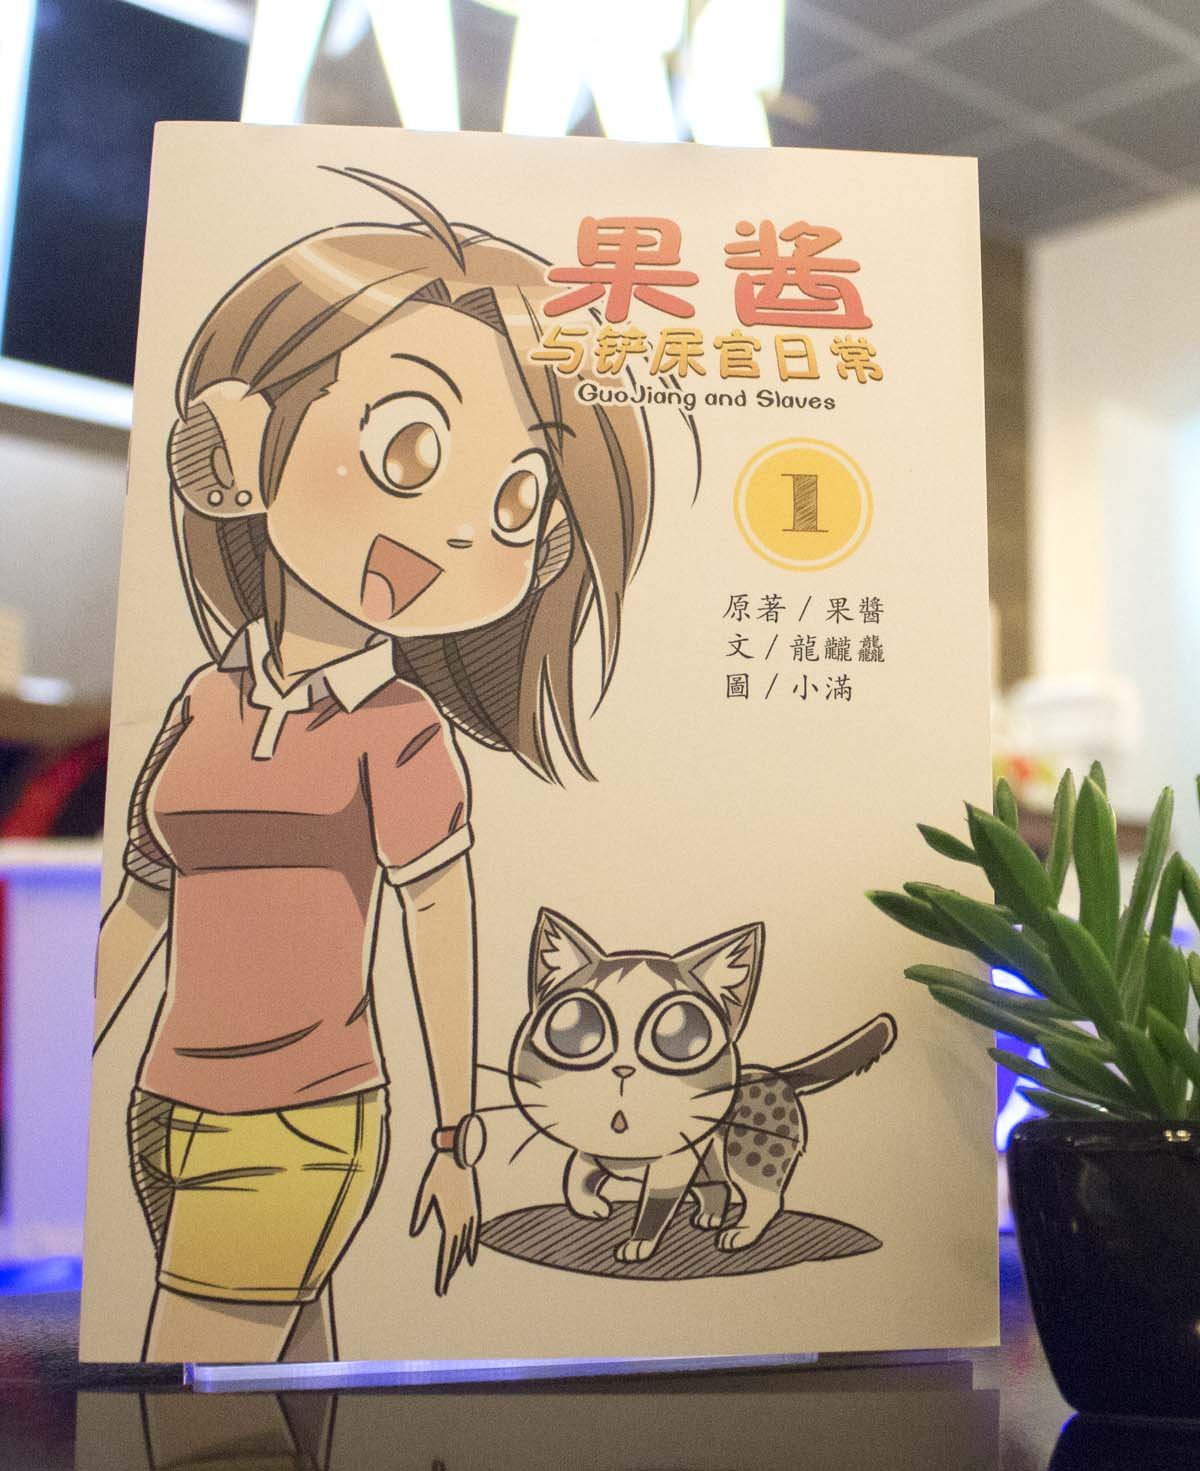 《果酱与铲屎官日常》漫画将于12月推出市场，盈利将作为“果酱基金”，利惠流浪猫。